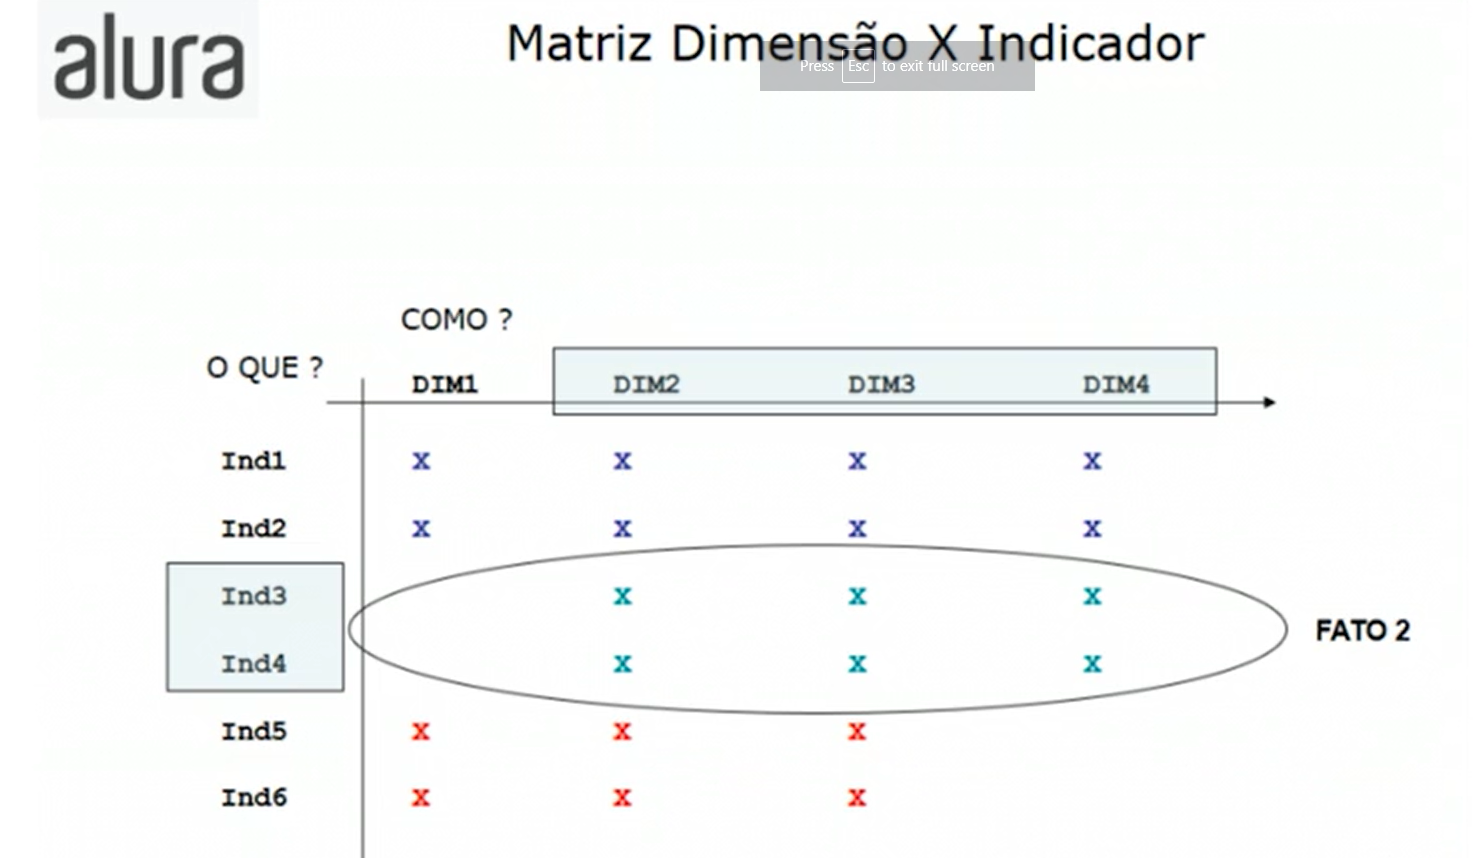 Exemplo de matriz Dimensão x Indicador